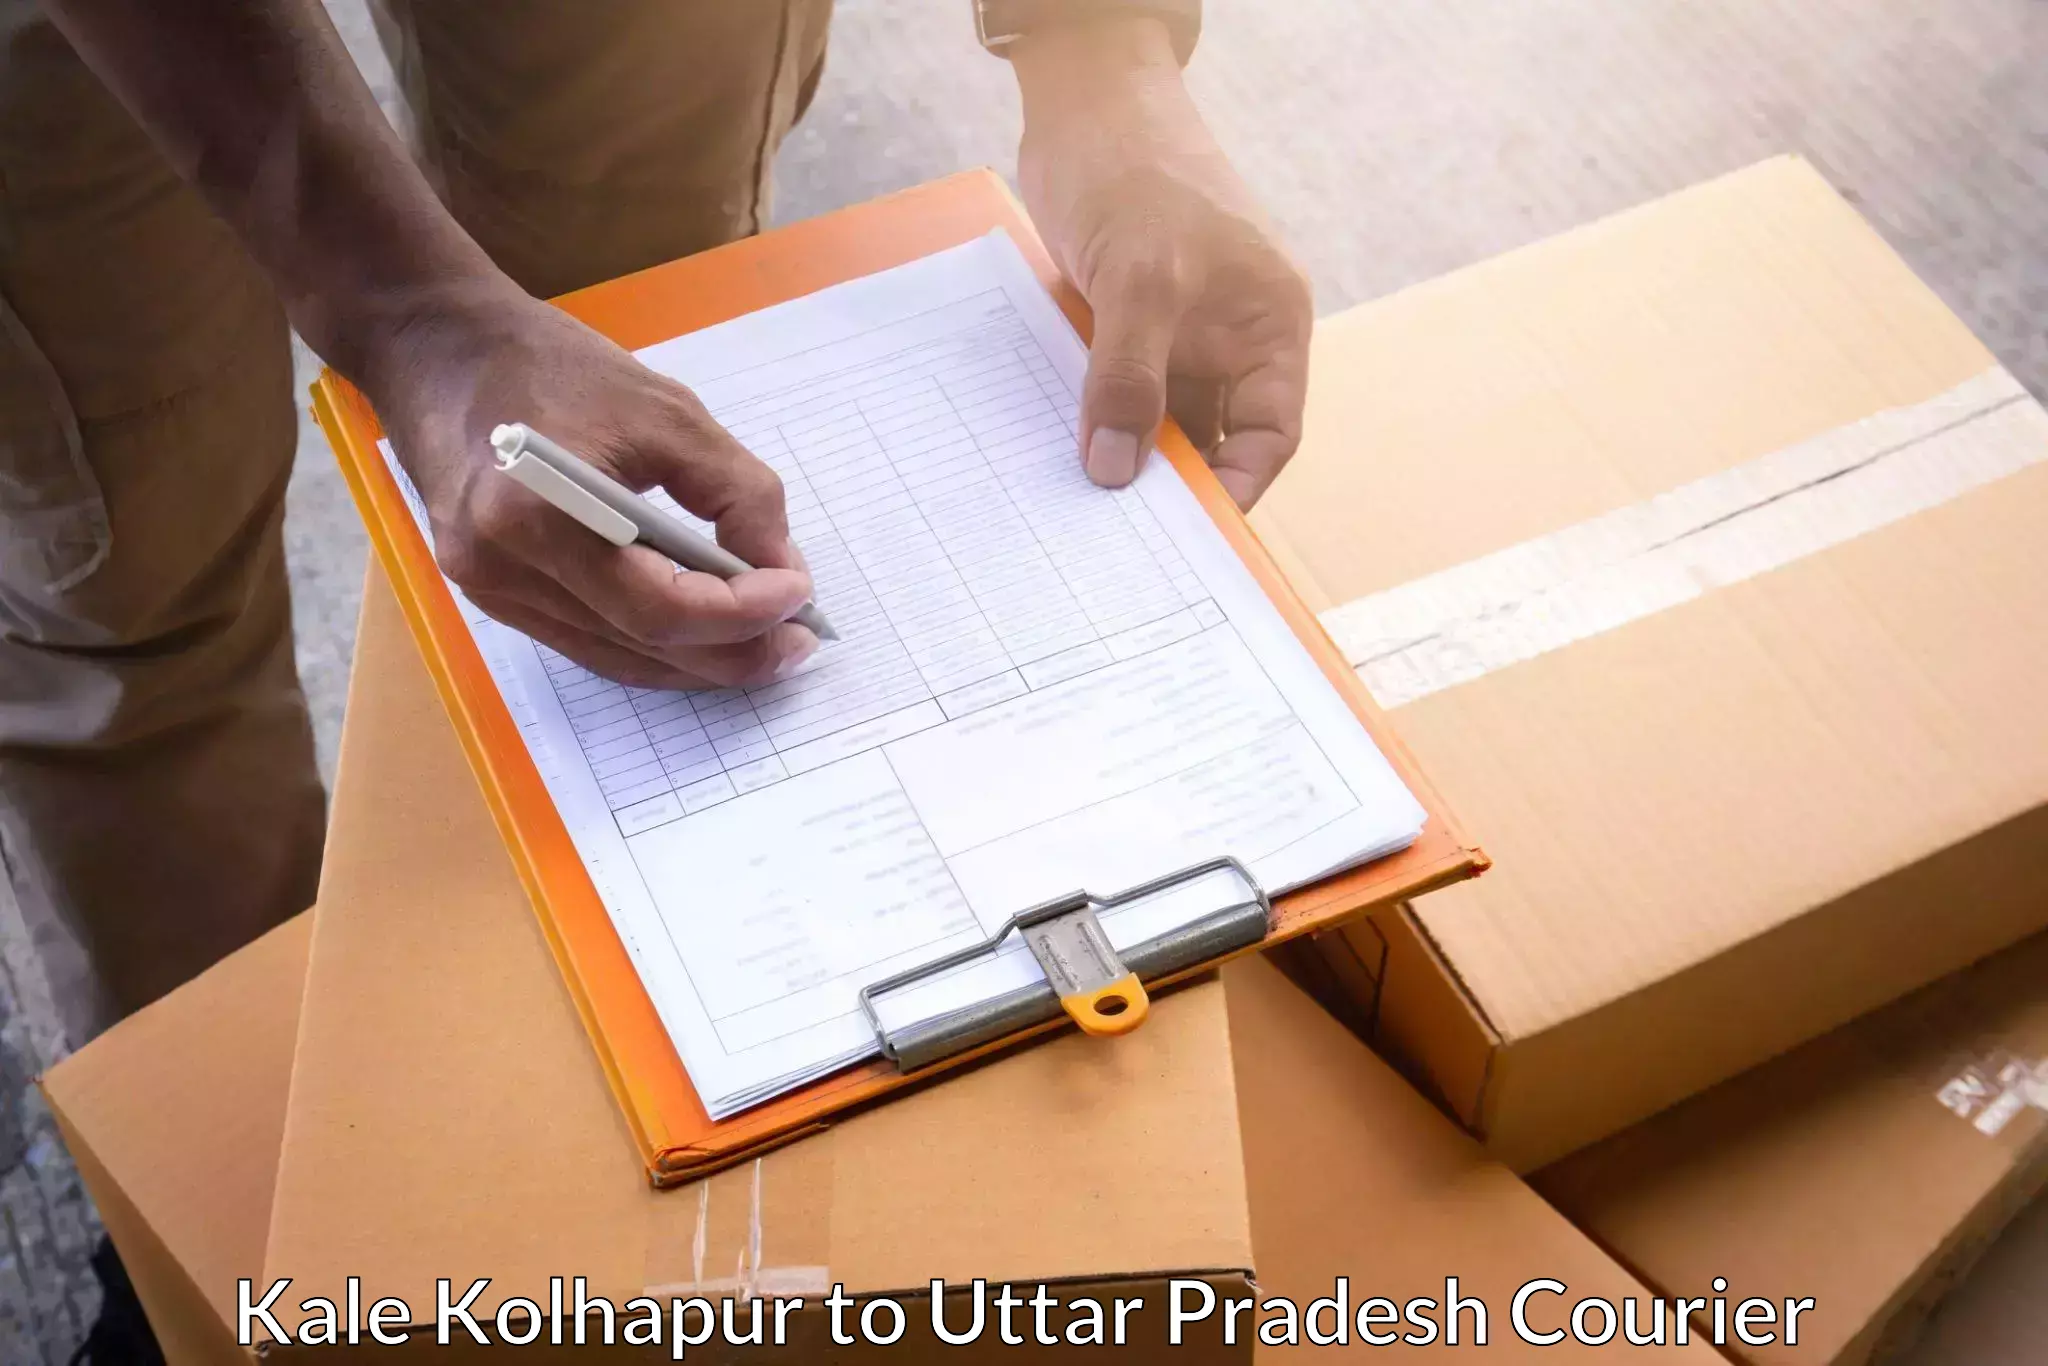 Large package courier Kale Kolhapur to Katghar Lalganj